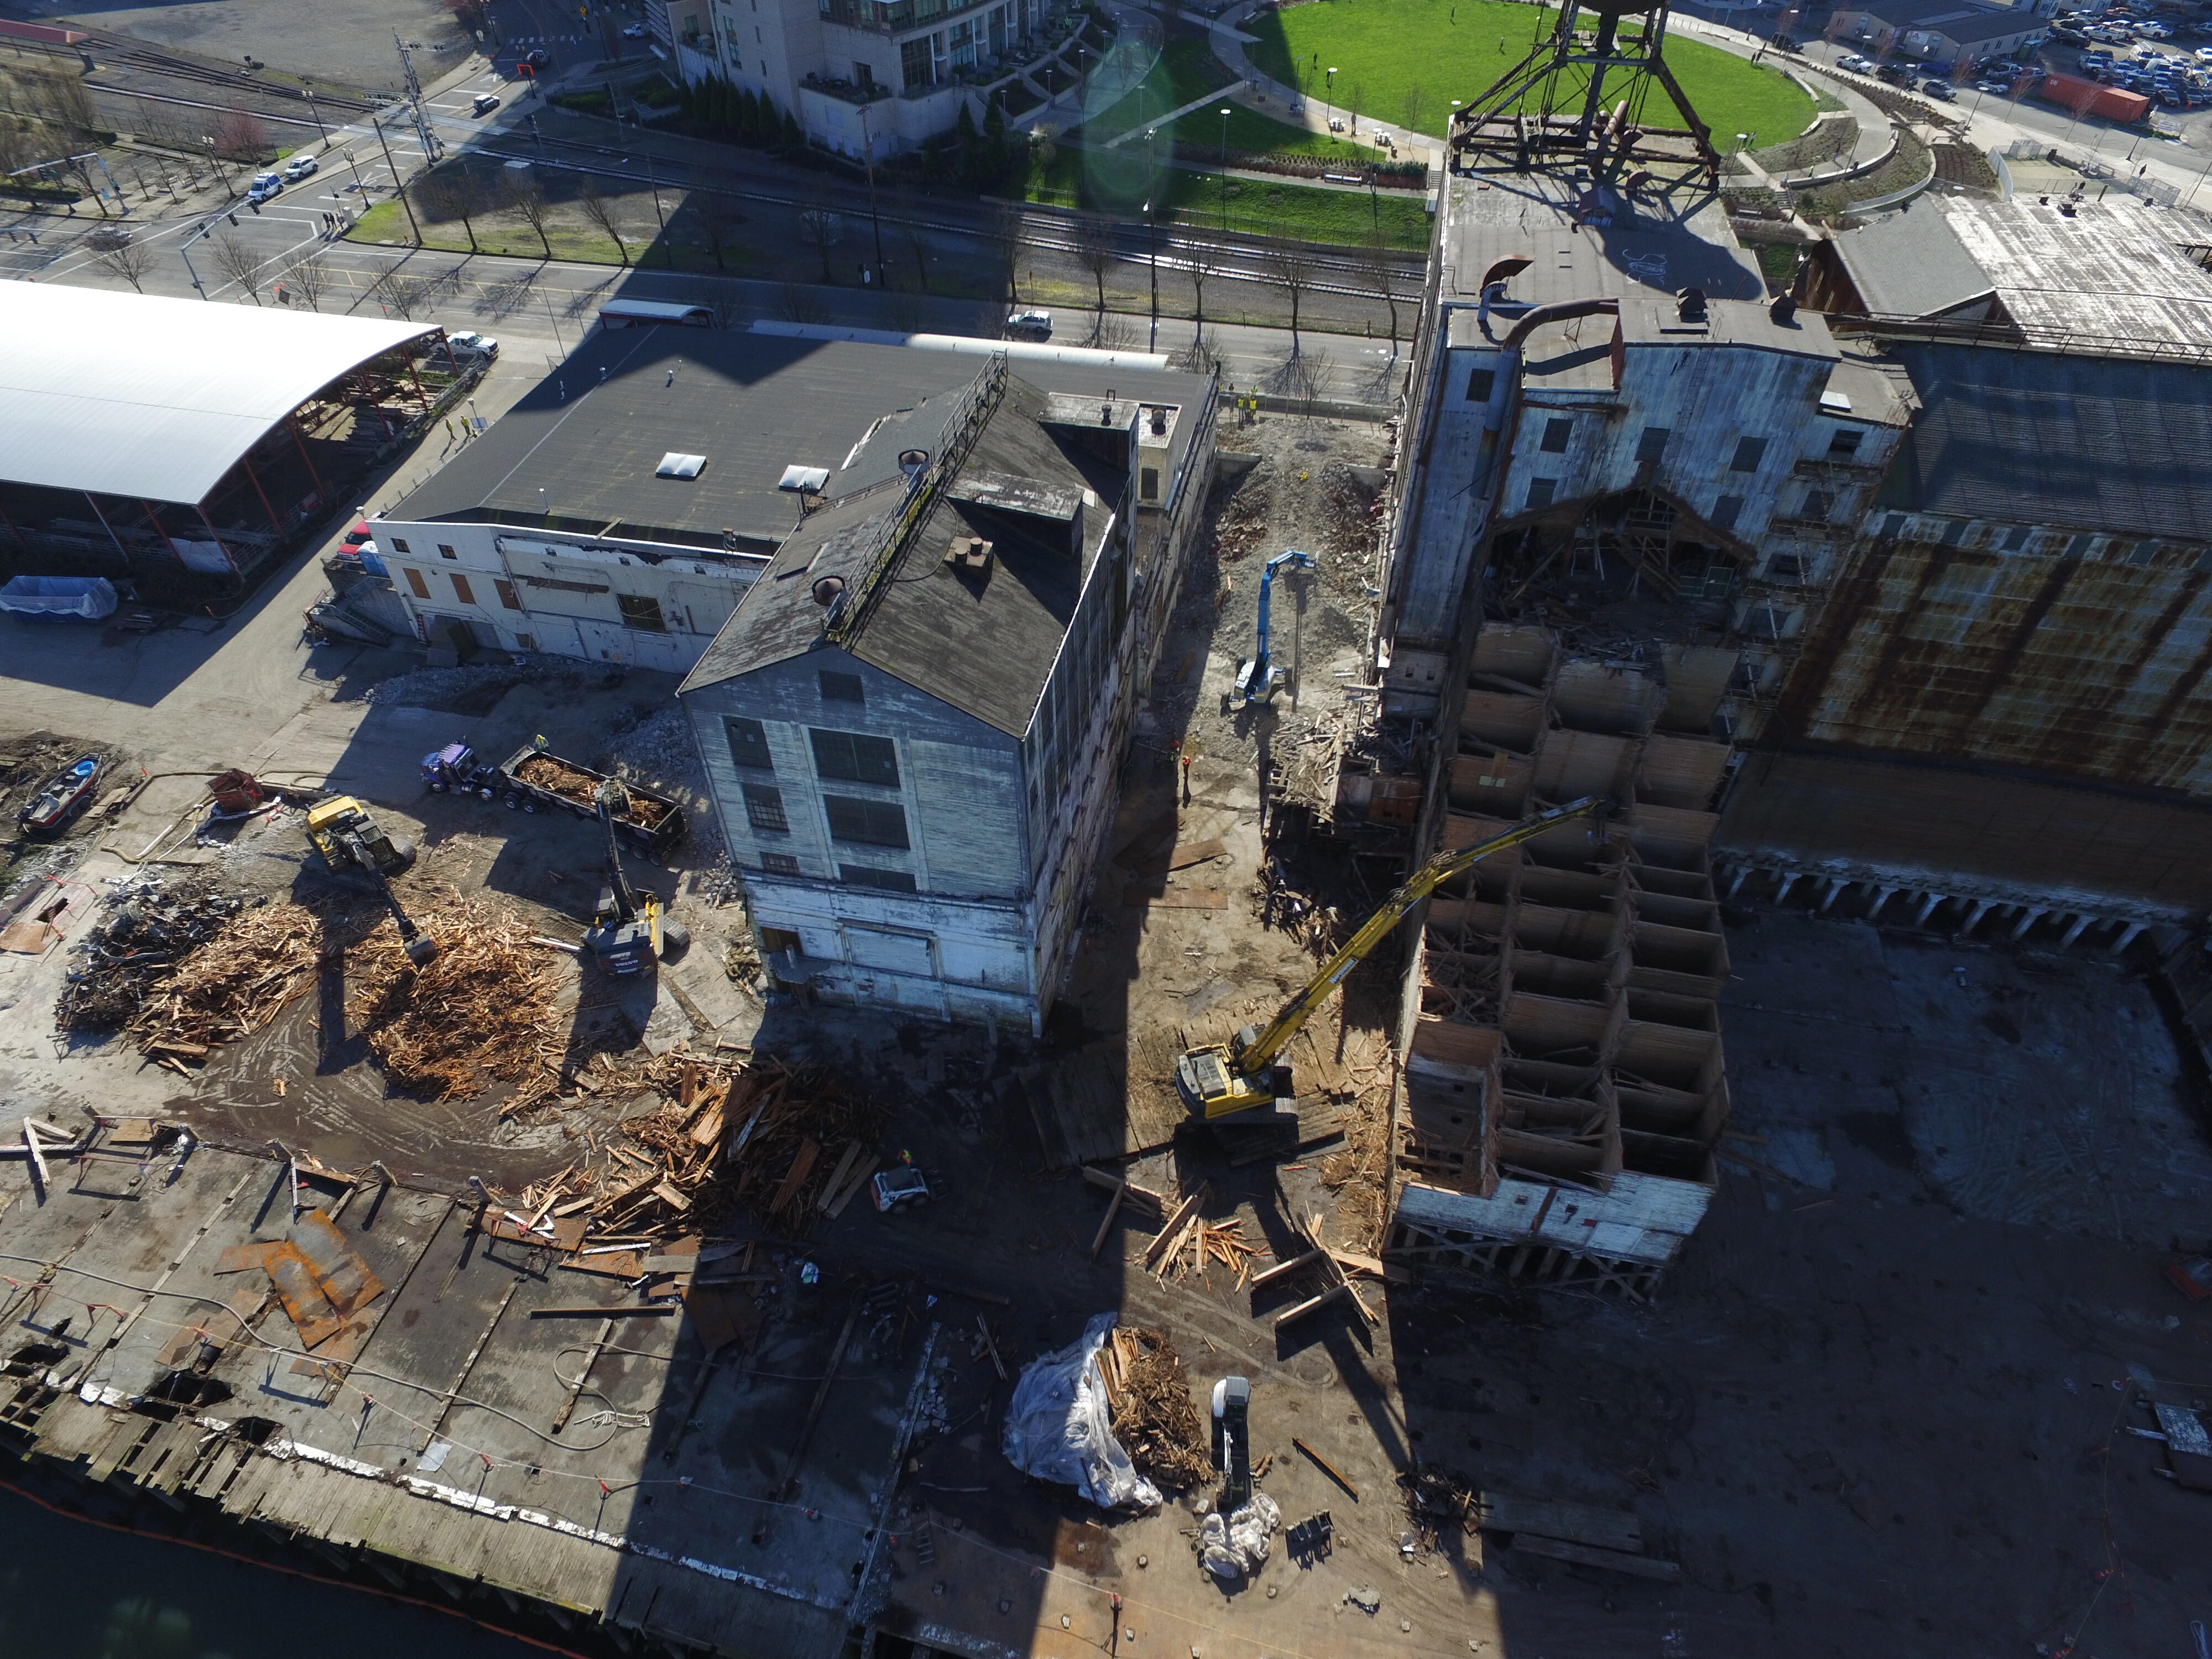 Northwest Demolition uses Volvo excavators on a demolition site